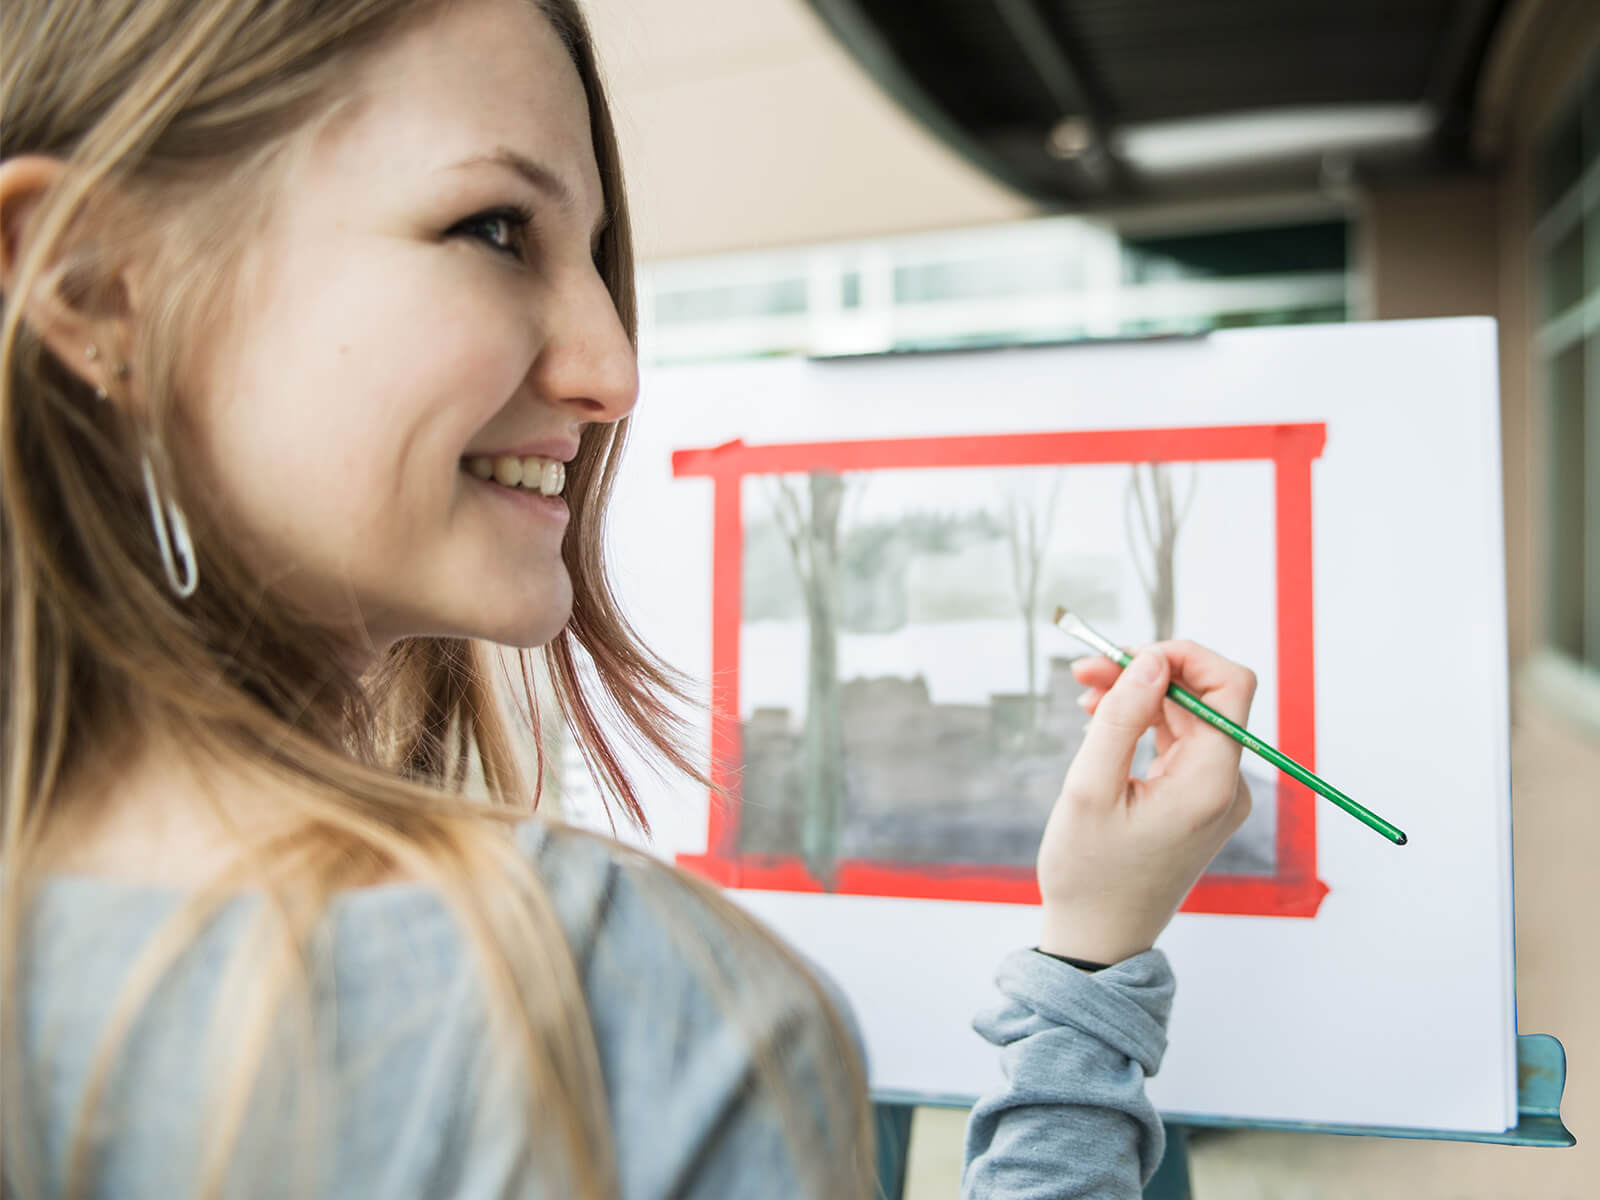 A DigiPen art student paints a watercolor landscape.